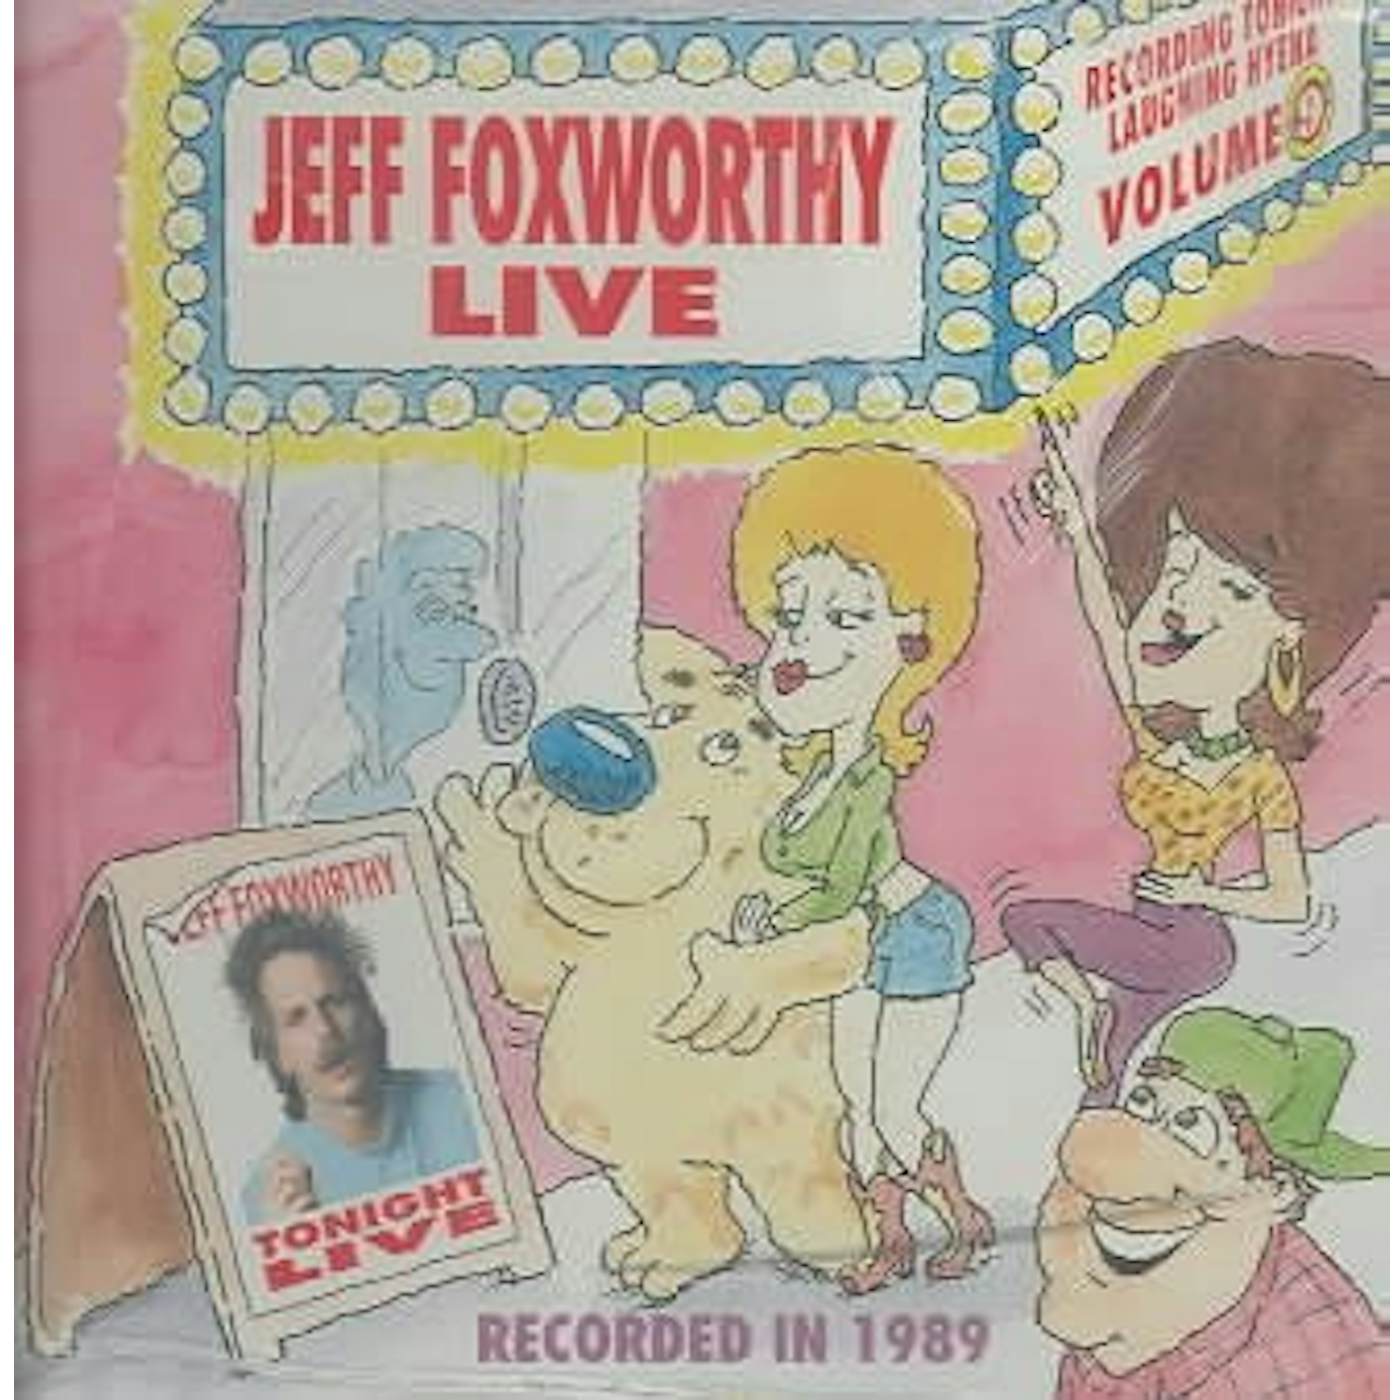 Jeff Foxworthy Live CD